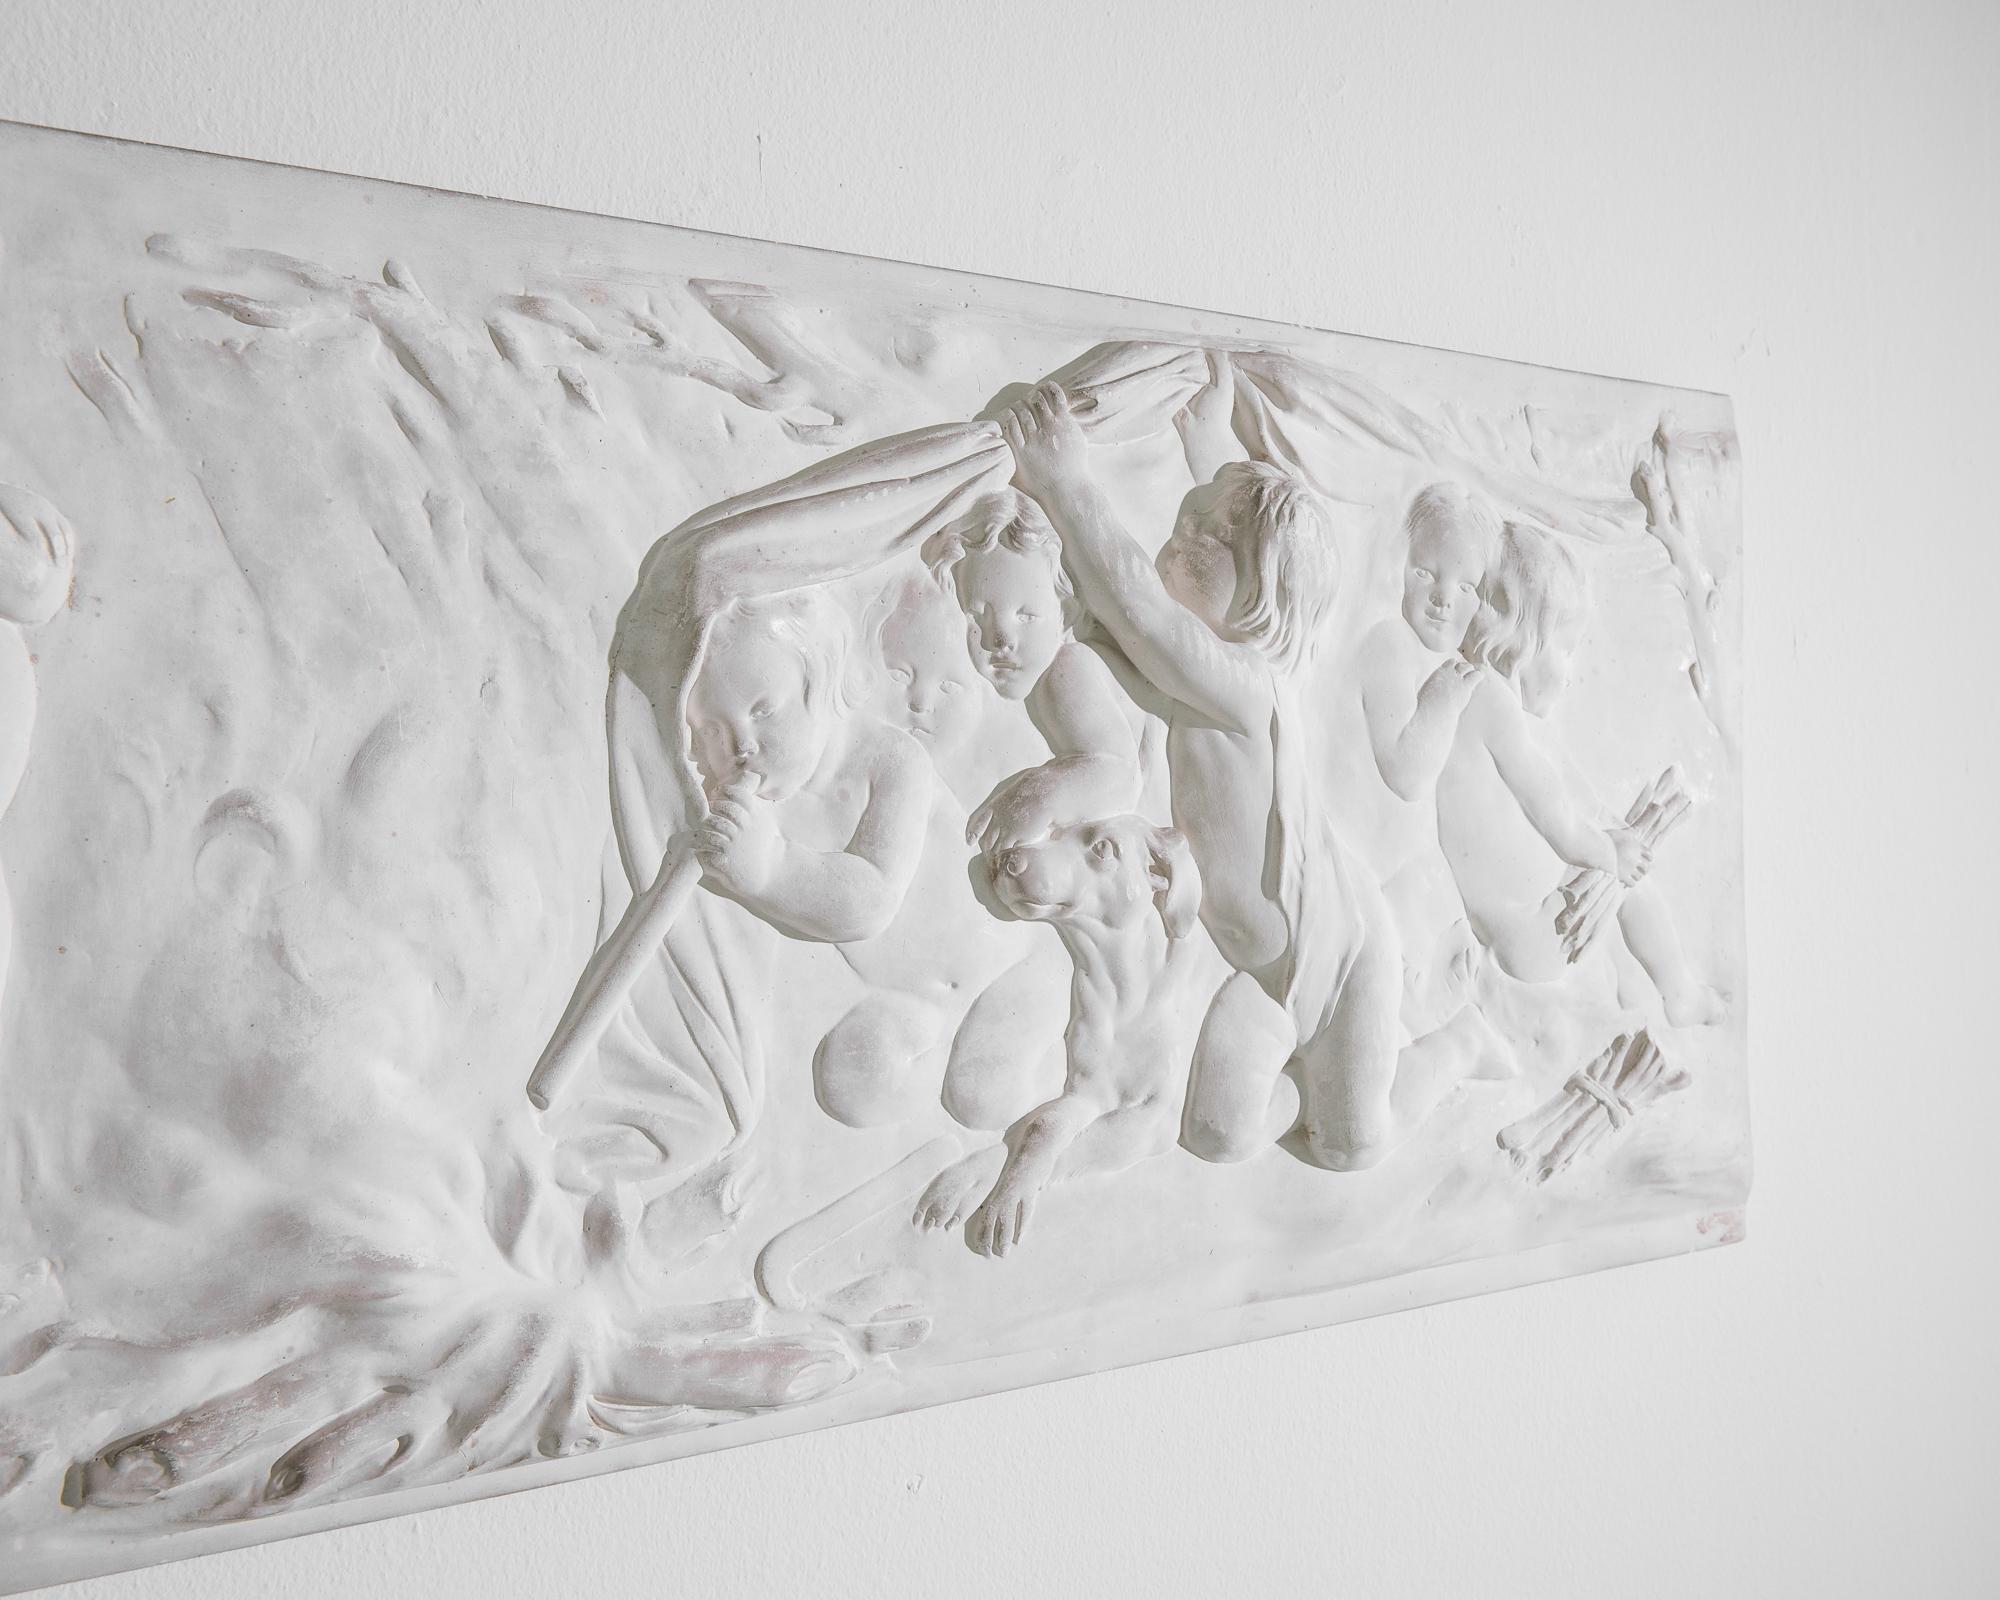 Eine Reliefplastik aus Gips, hergestellt in Frankreich um 1930. Eine traumhafte Szene mit watschelnden Kleinkindern im Wald, die unbeaufsichtigt spielen und alles Mögliche tun, vom Schlafen im Gebüsch bis zum Feuermachen. Die Reinheit des in weißem